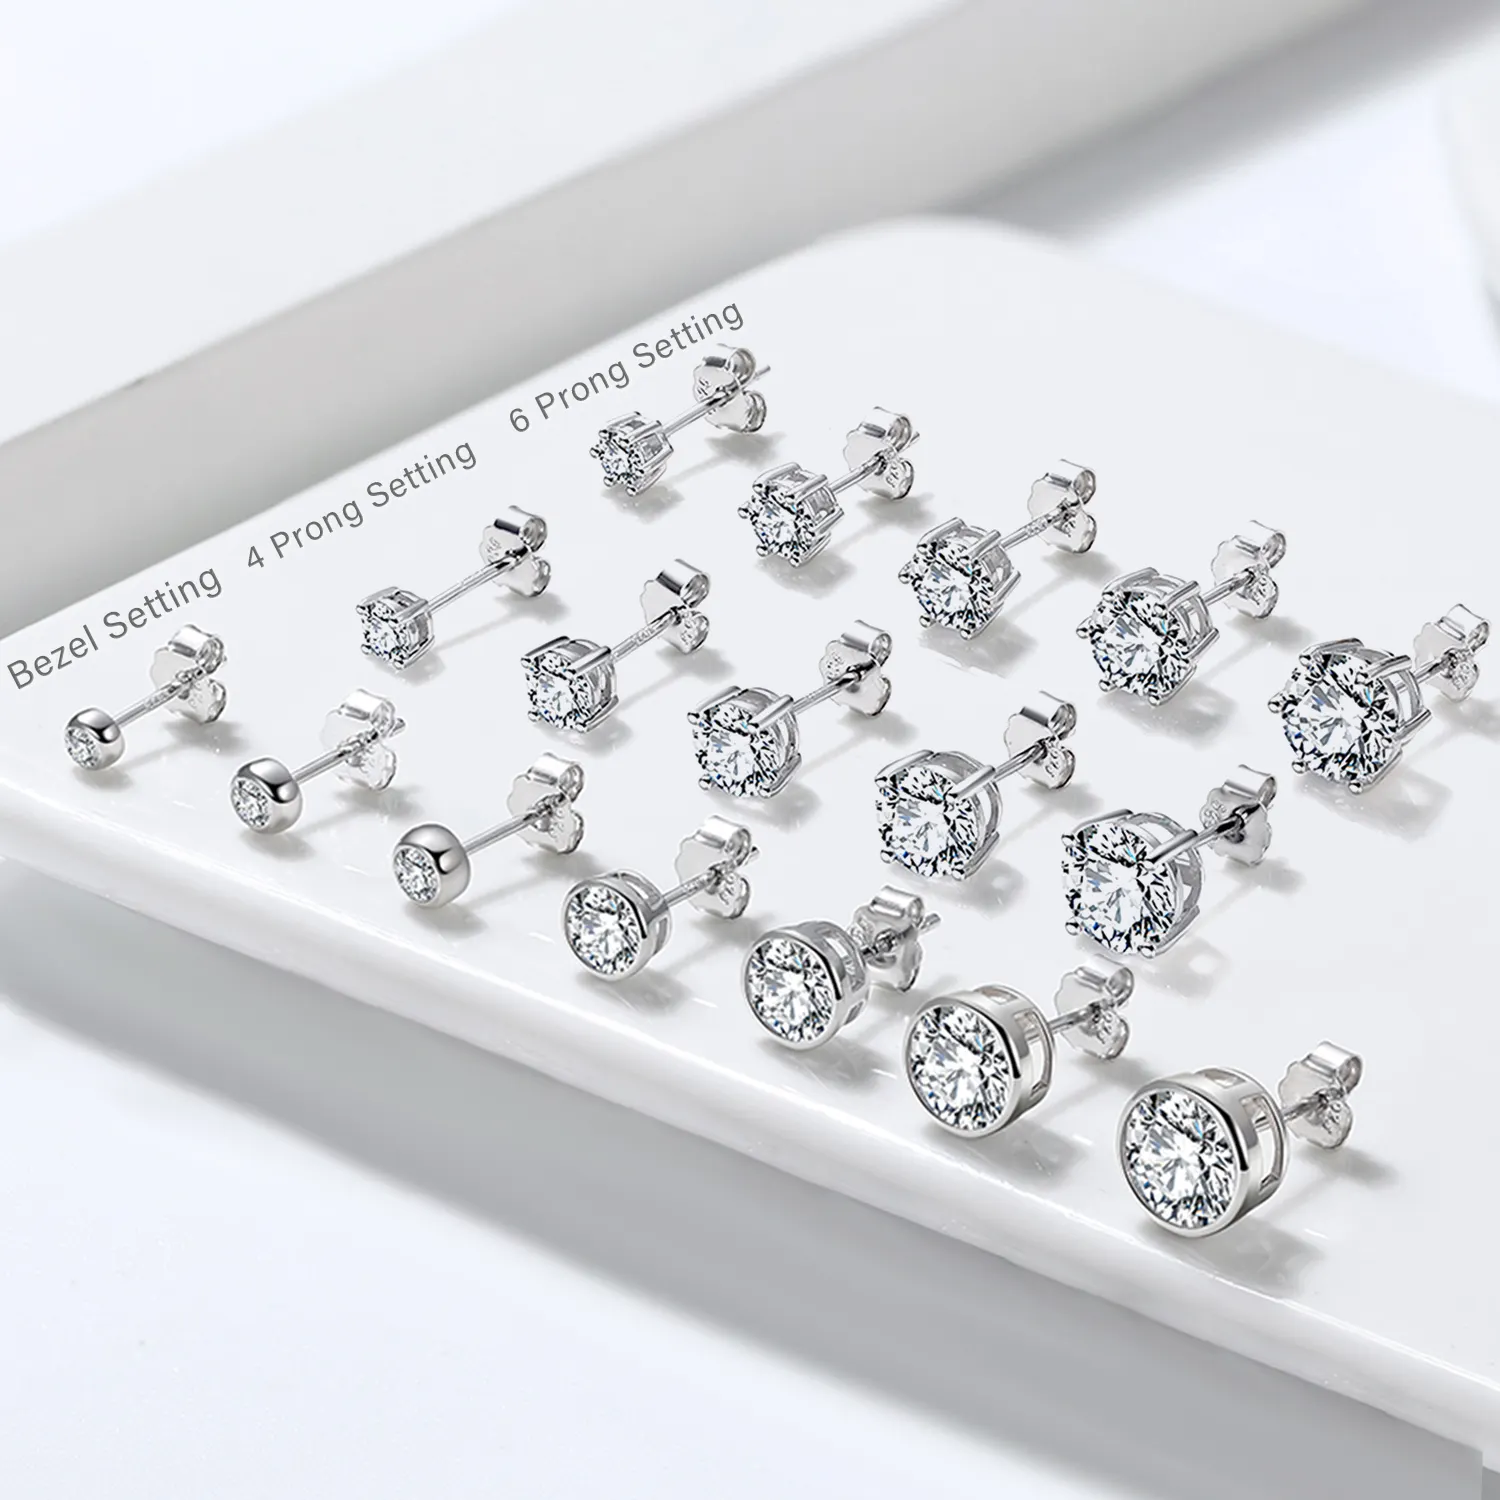 RINNTIN APE33 Piercing jewelry Pure 925 Sterling Silver Earrings Crystal Earrings Fashion CZ Zirconia Stud Earrings For Women